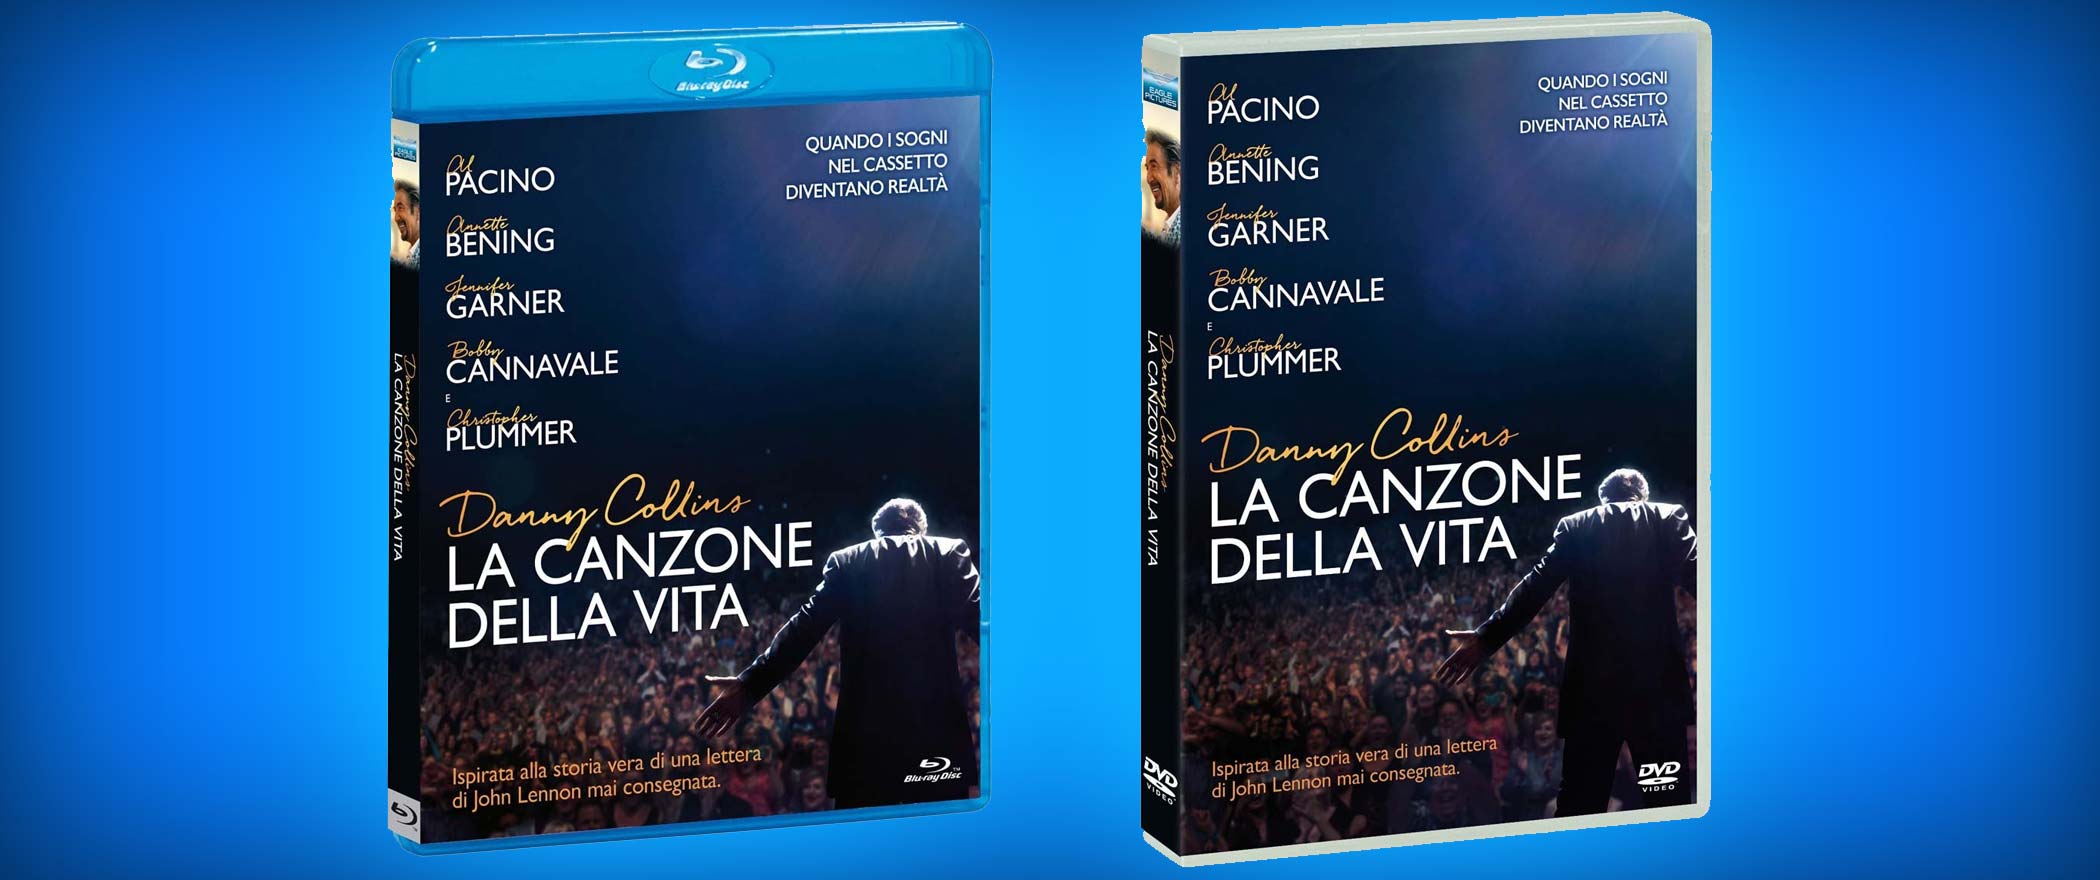 La canzone della vita - Danny Collins con Al Pacino in DVD, Blu-ray